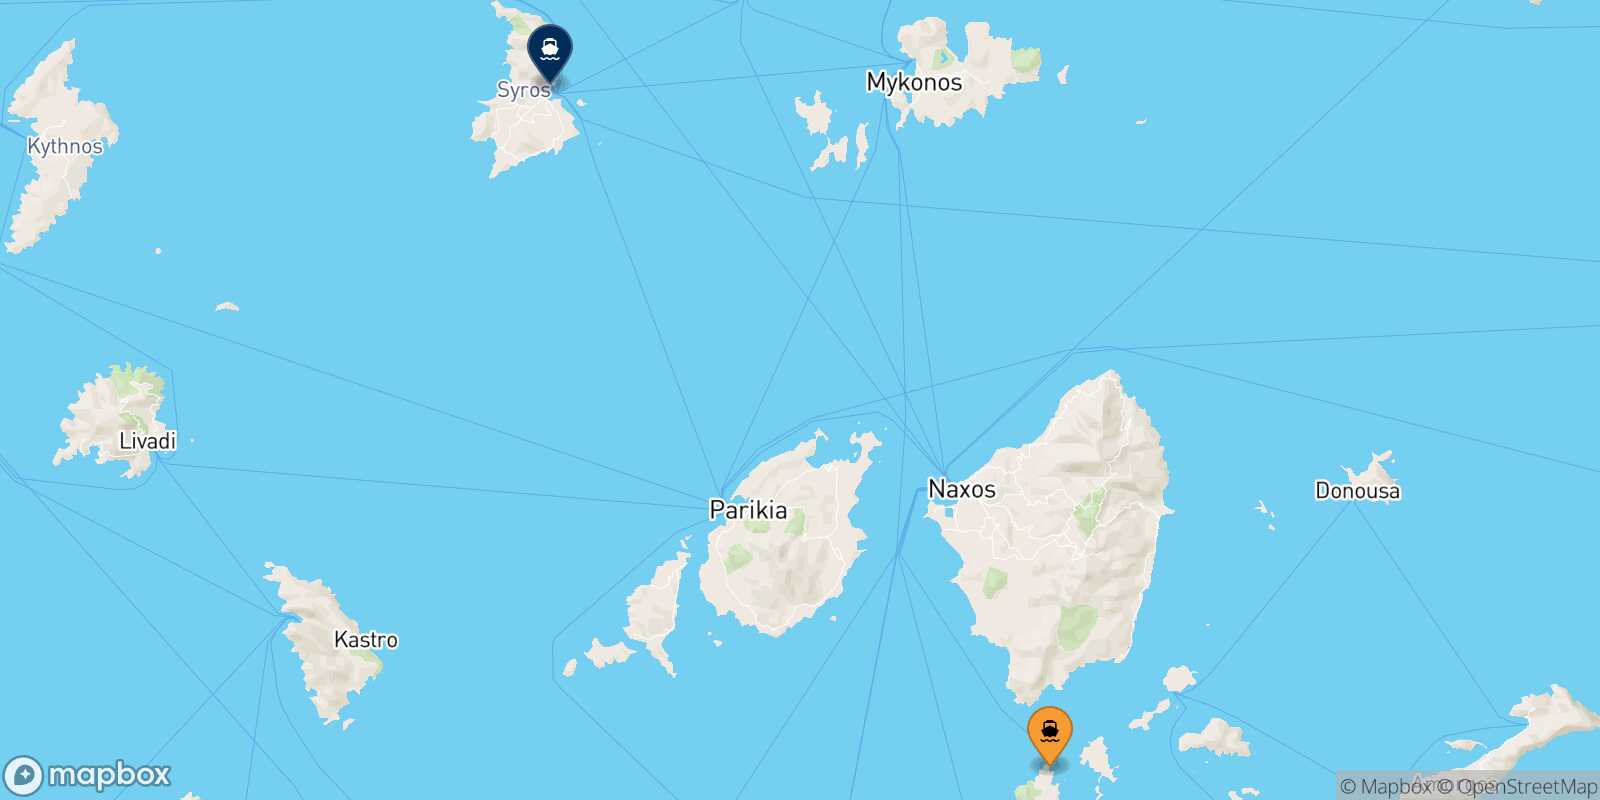 Iraklia Syros route map